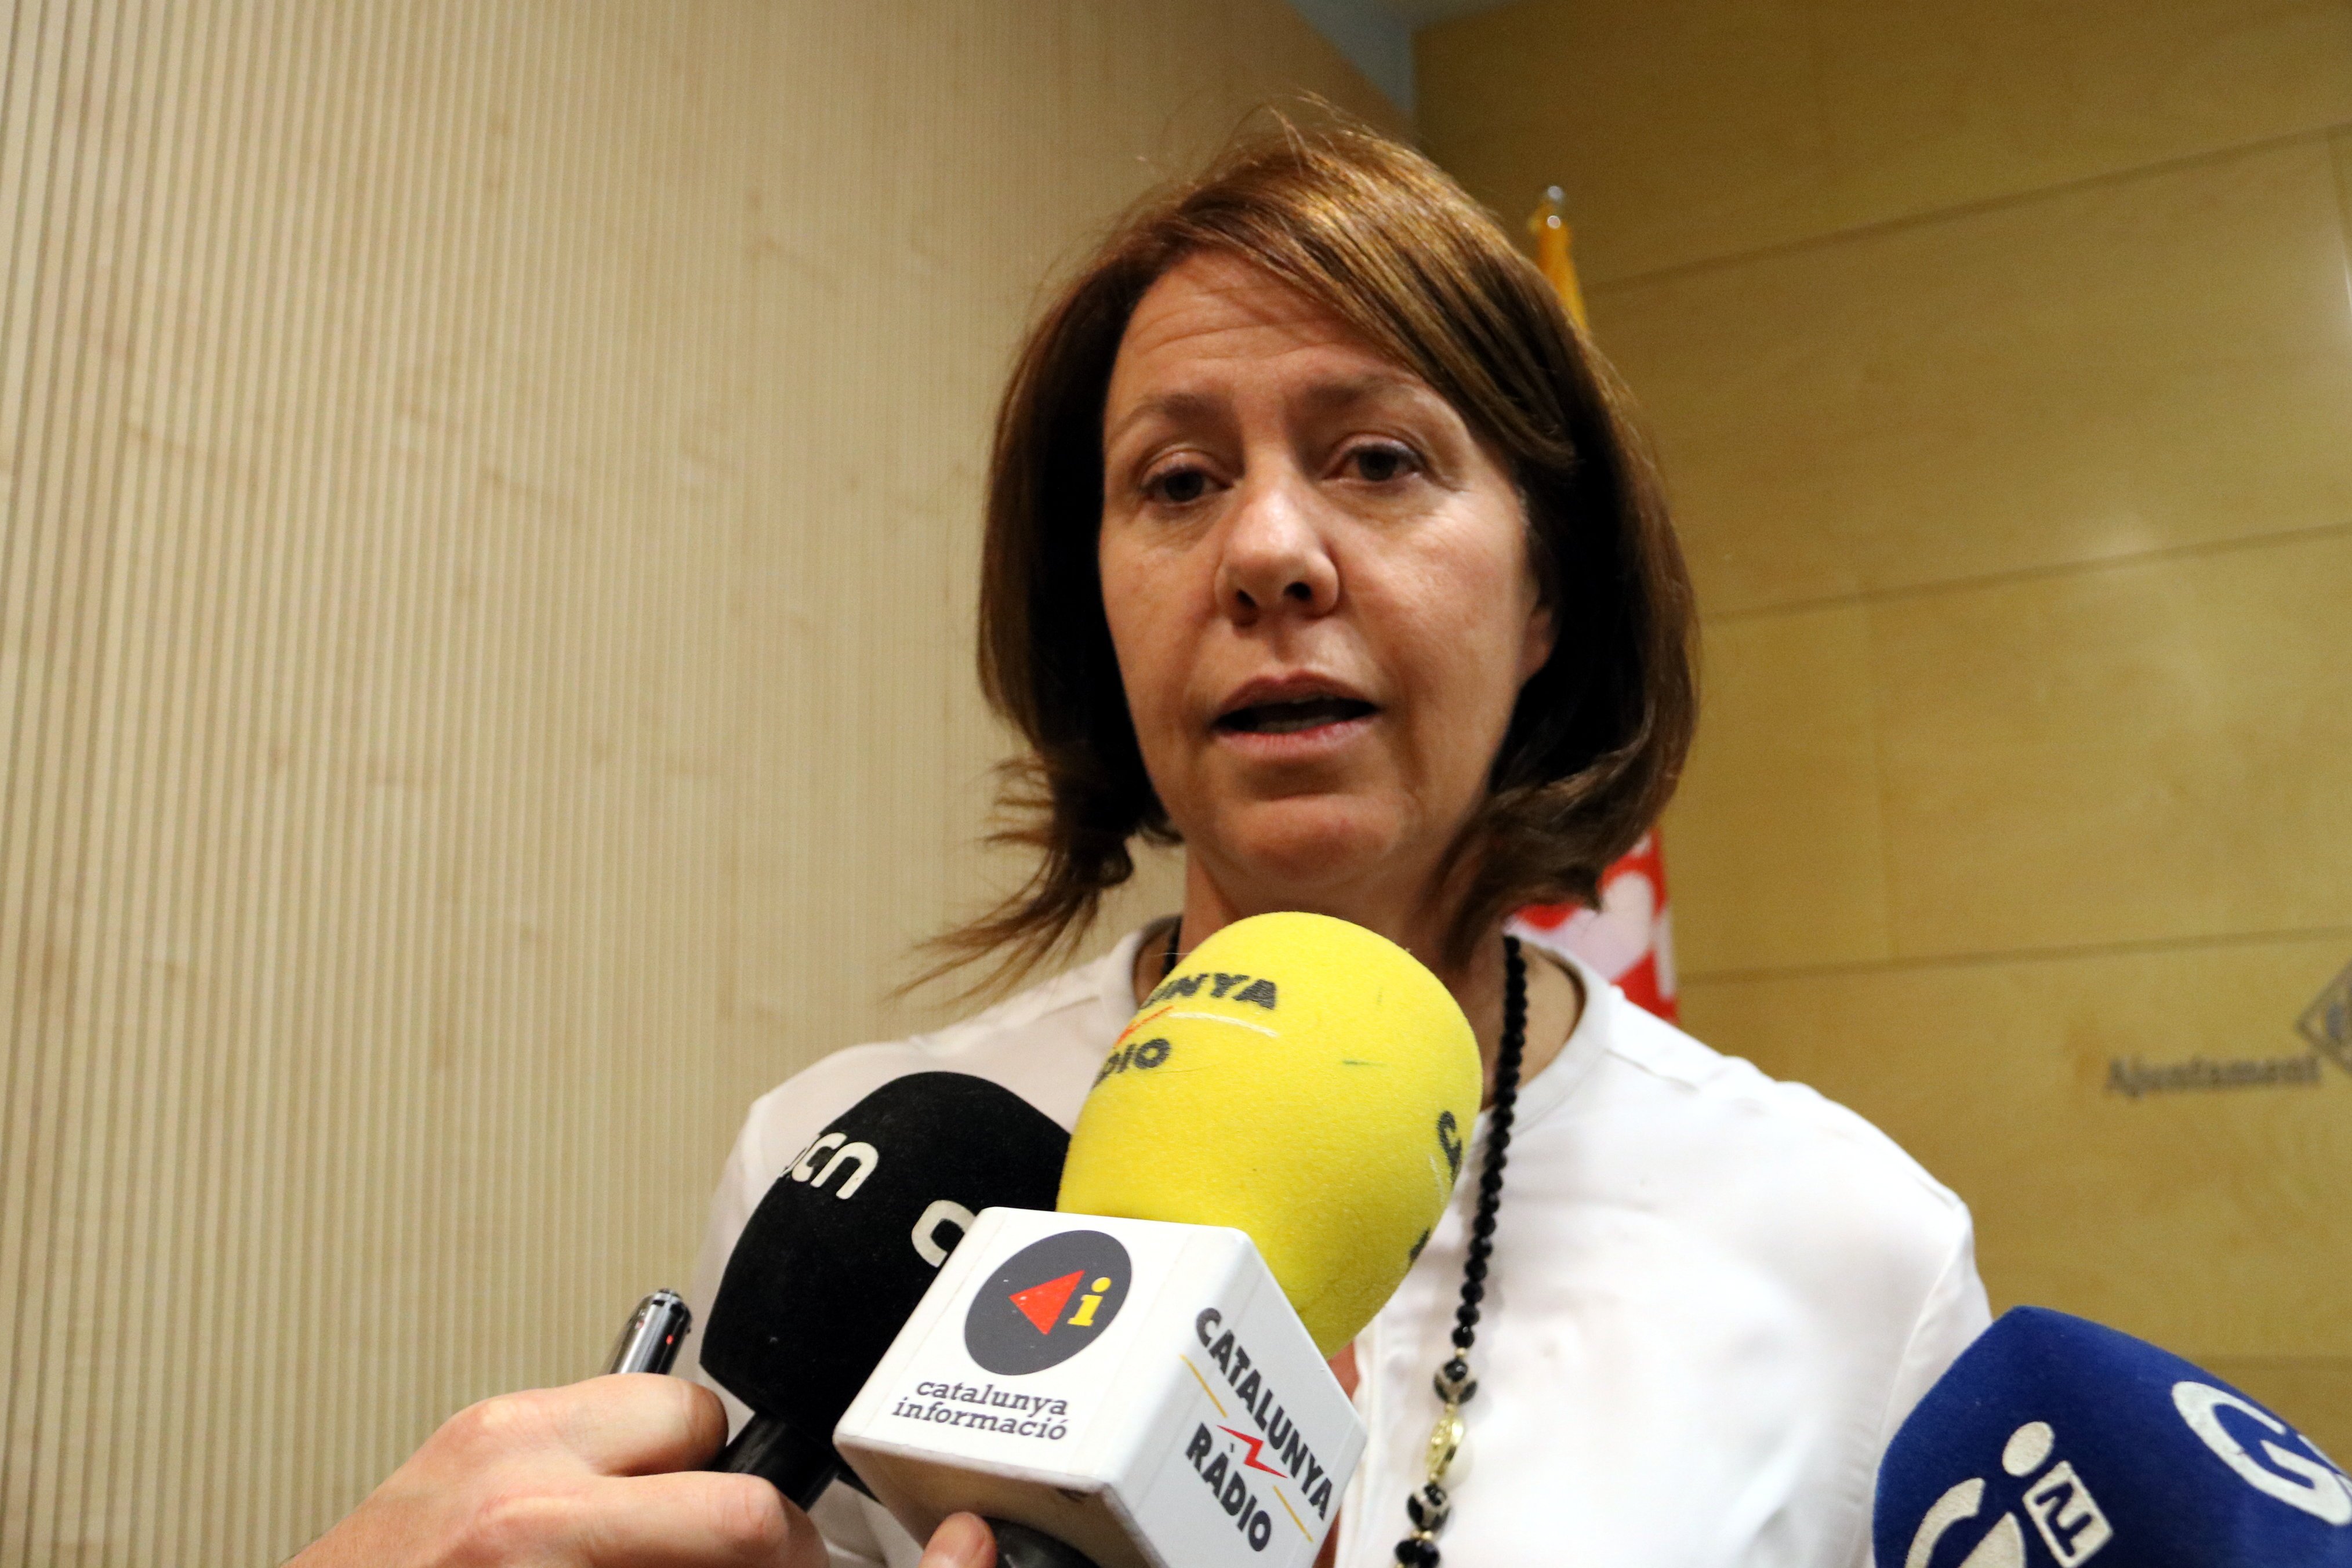 L'alcaldessa de Girona planta cara a Millo: "No homenatjarem a aquells que ens van atonyinar"